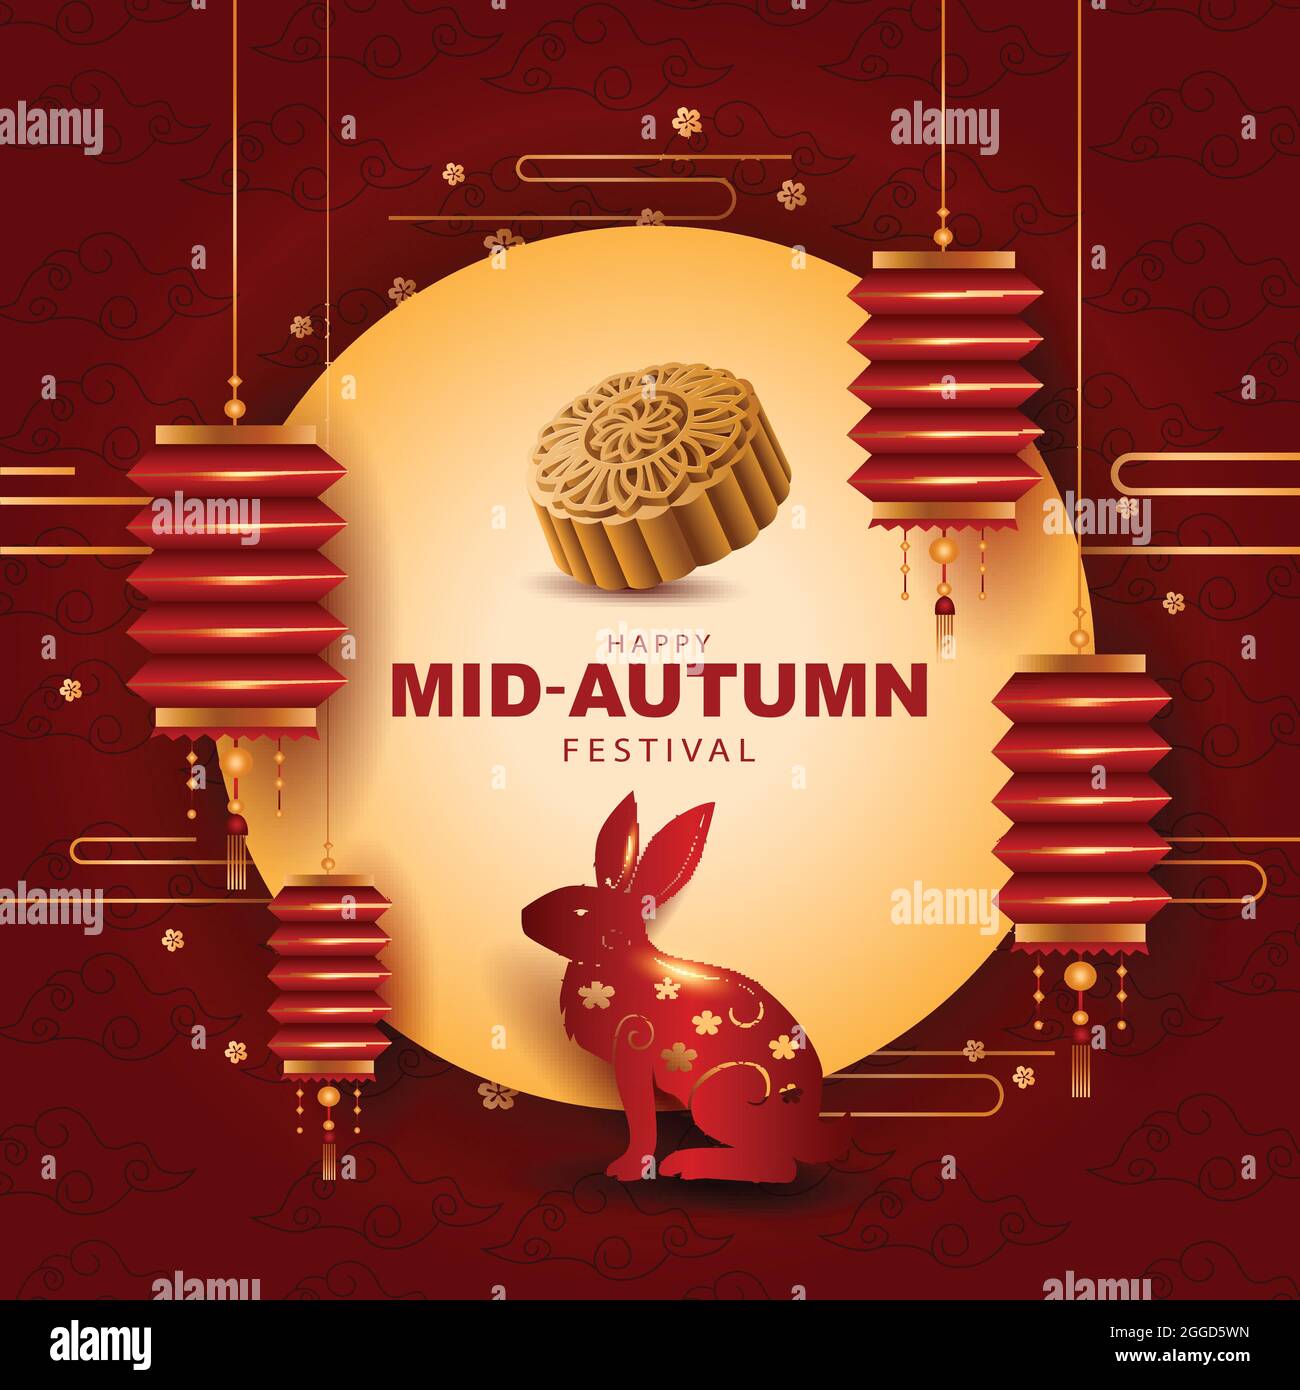 Happy Mid Autumn Festival Illustration de bienvenue dans un design traditionnel d'art chinois, avec lanterne et lune. Illustration de Vecteur